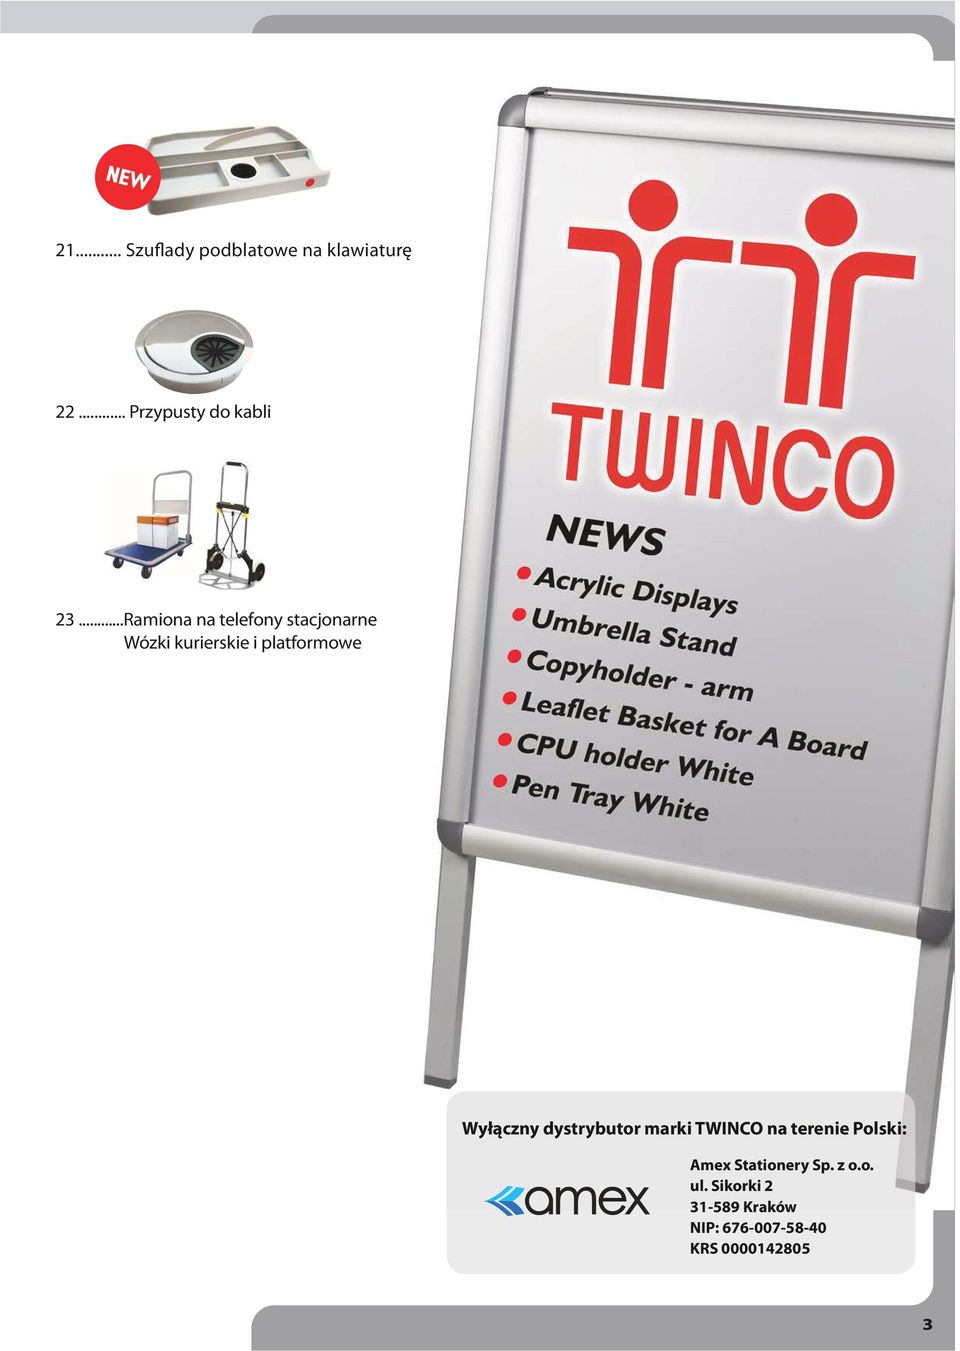 Wyłączny dystrybutor marki TWINCO na terenie Polski: Amex Stationery